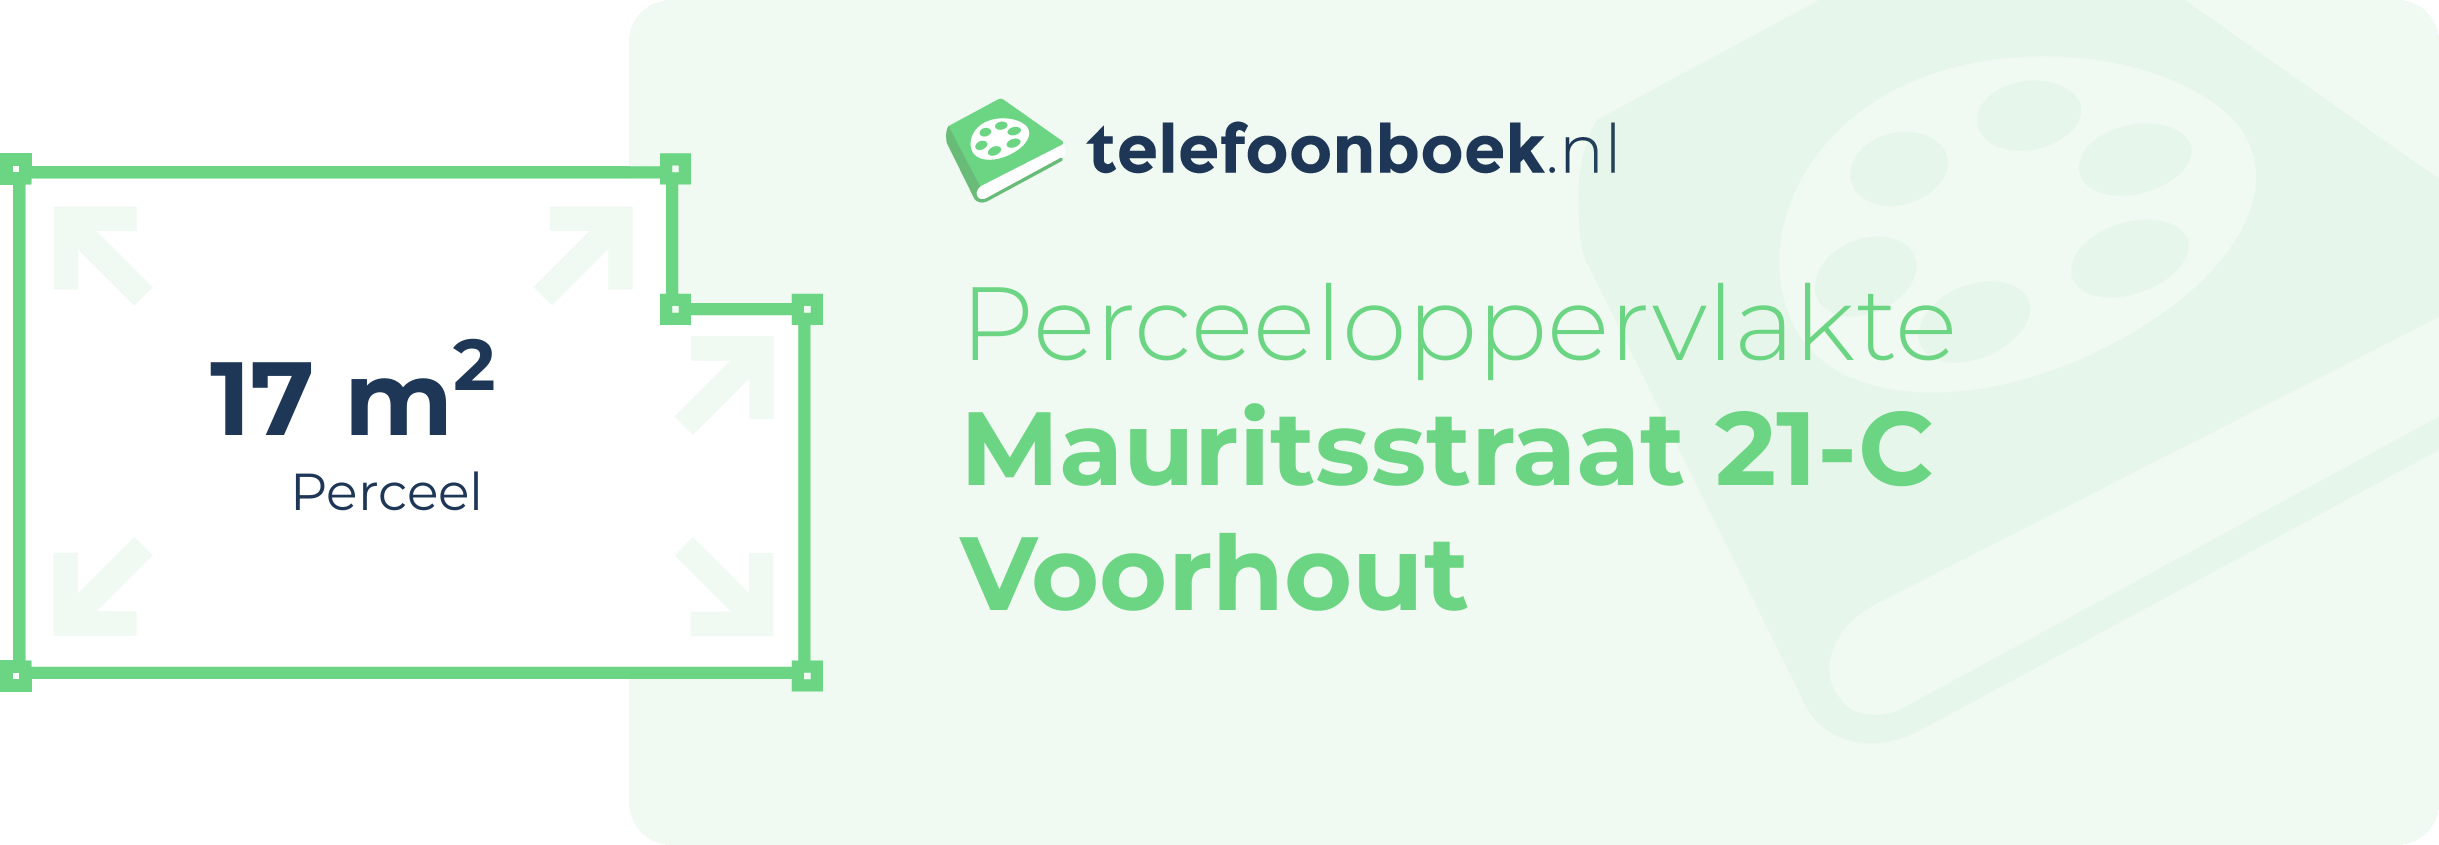 Perceeloppervlakte Mauritsstraat 21-C Voorhout